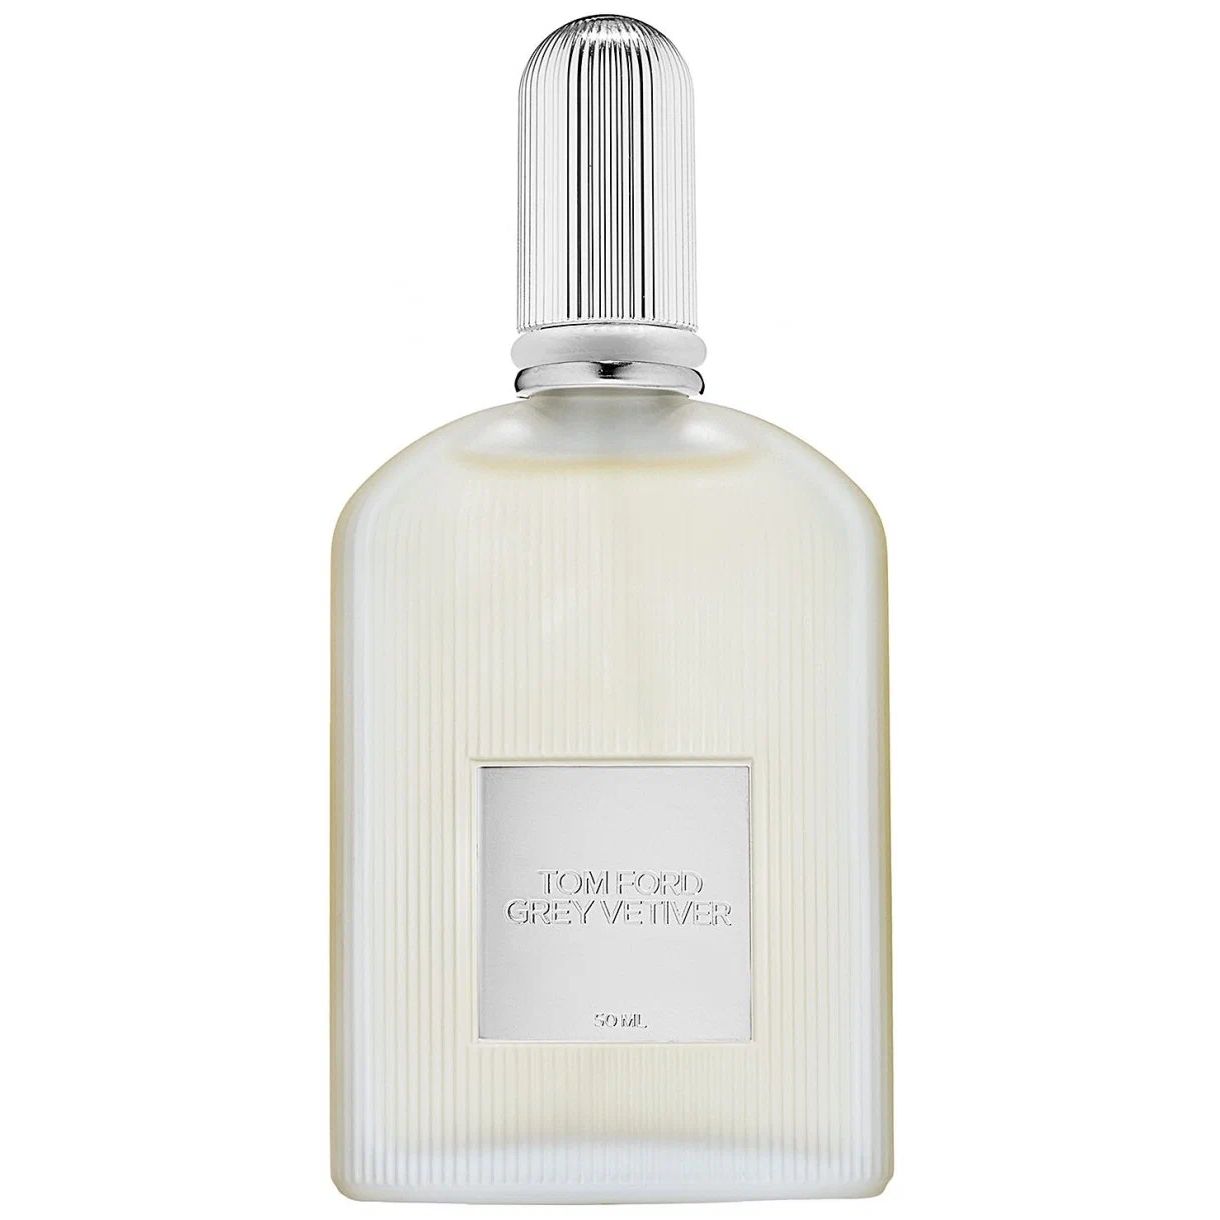 Мужская парфюмерия Tom Ford - купить мужскую парфюмерию Том Форд, цены на Мегамаркет